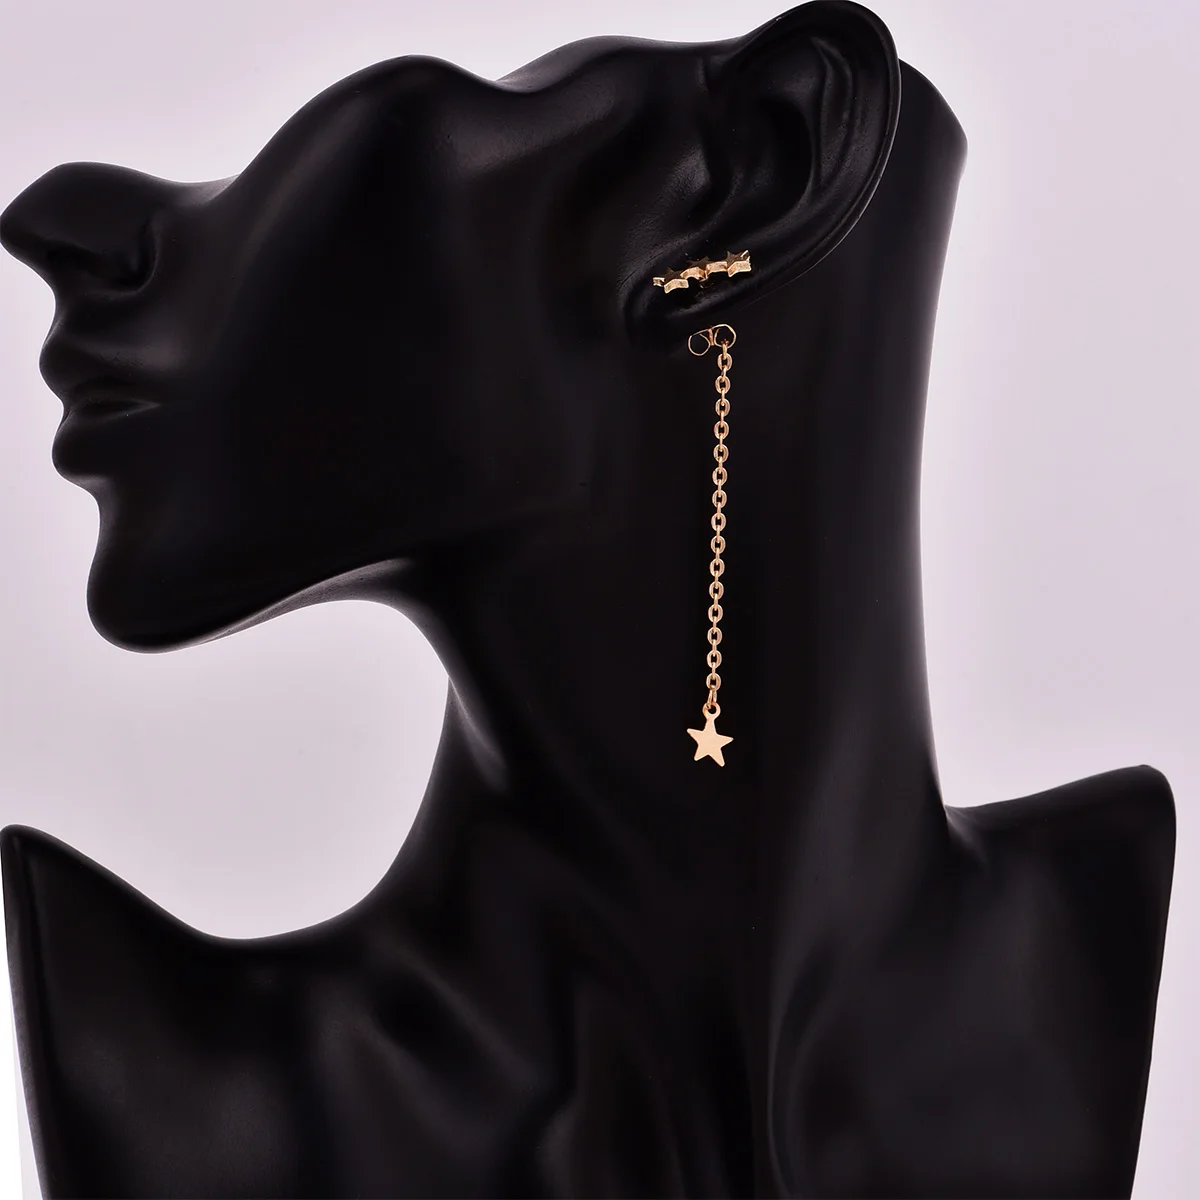 Новая мода tredny звезда шпильки для женщин и девочек Jewelry E0084